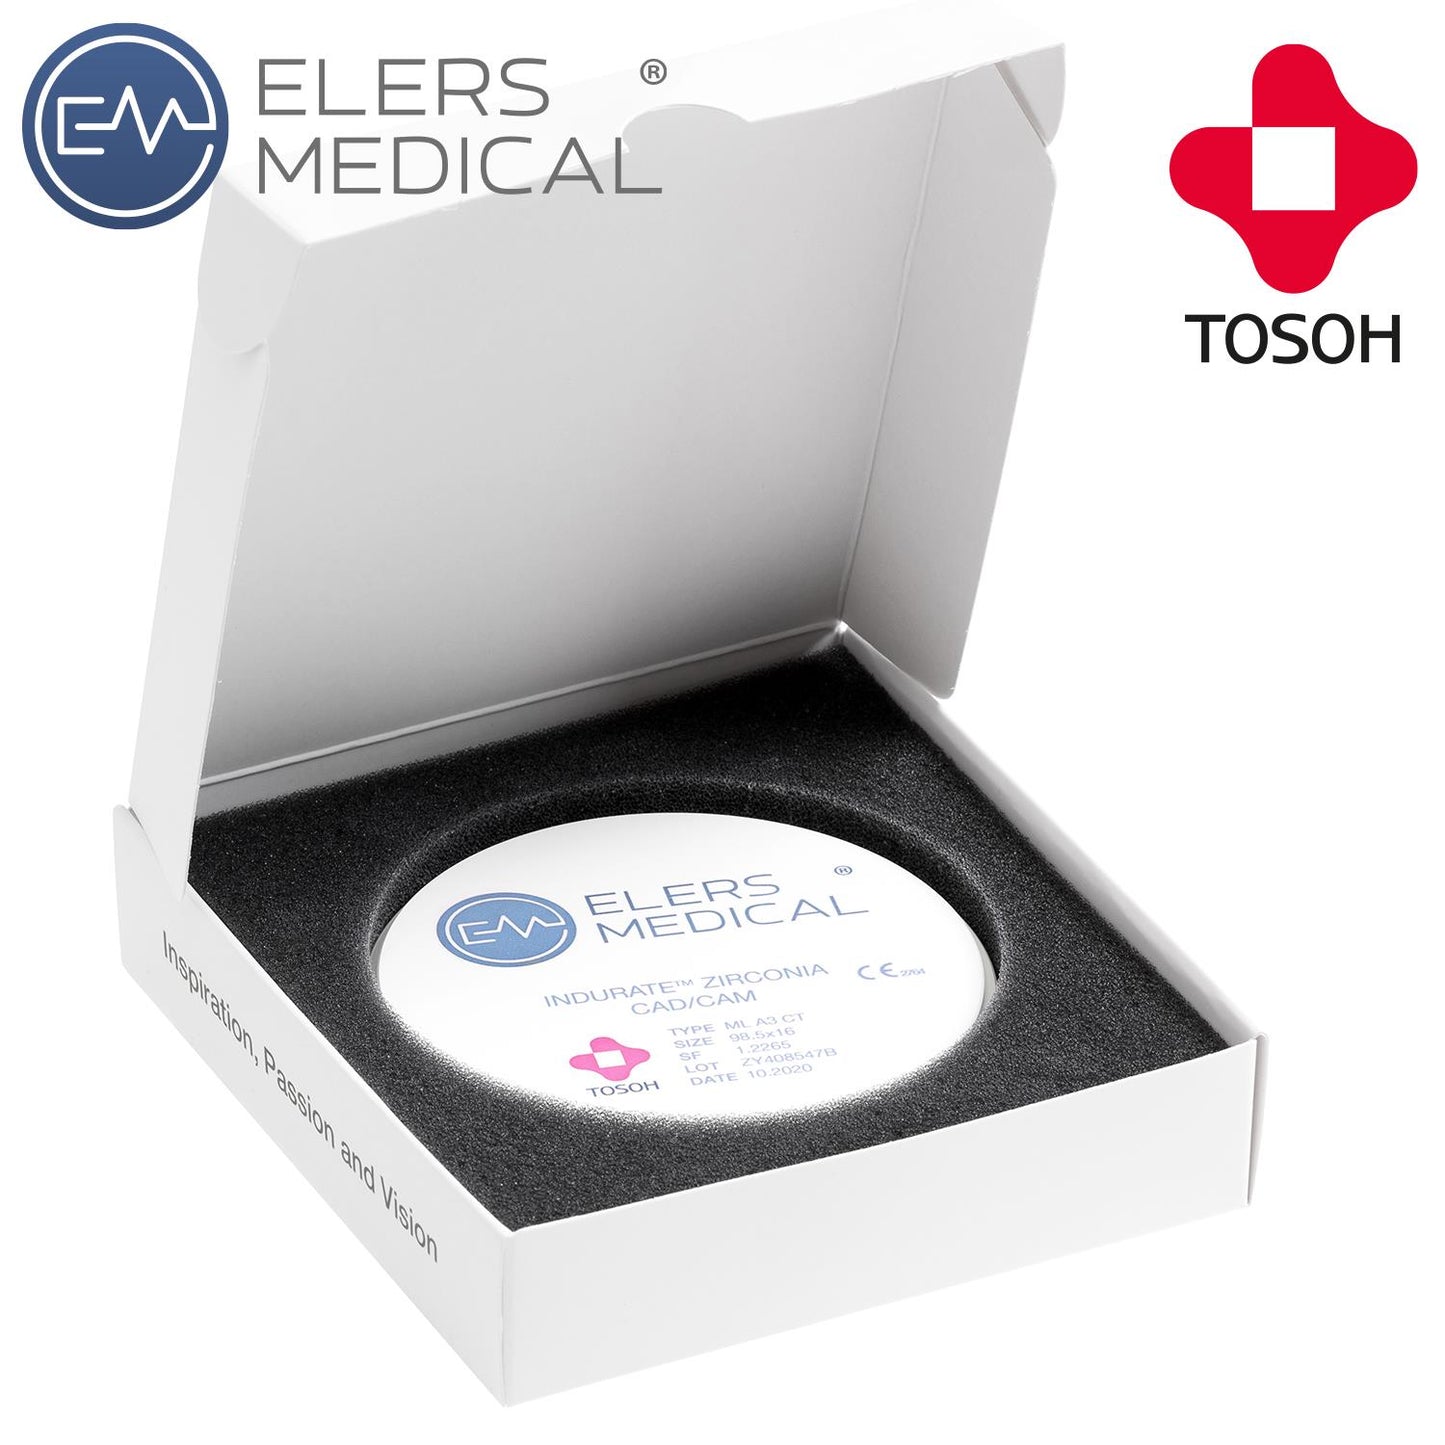 INDURATE Multilayer Extra-Translucent CAD/CAM Zirconia Discs - 22 mm